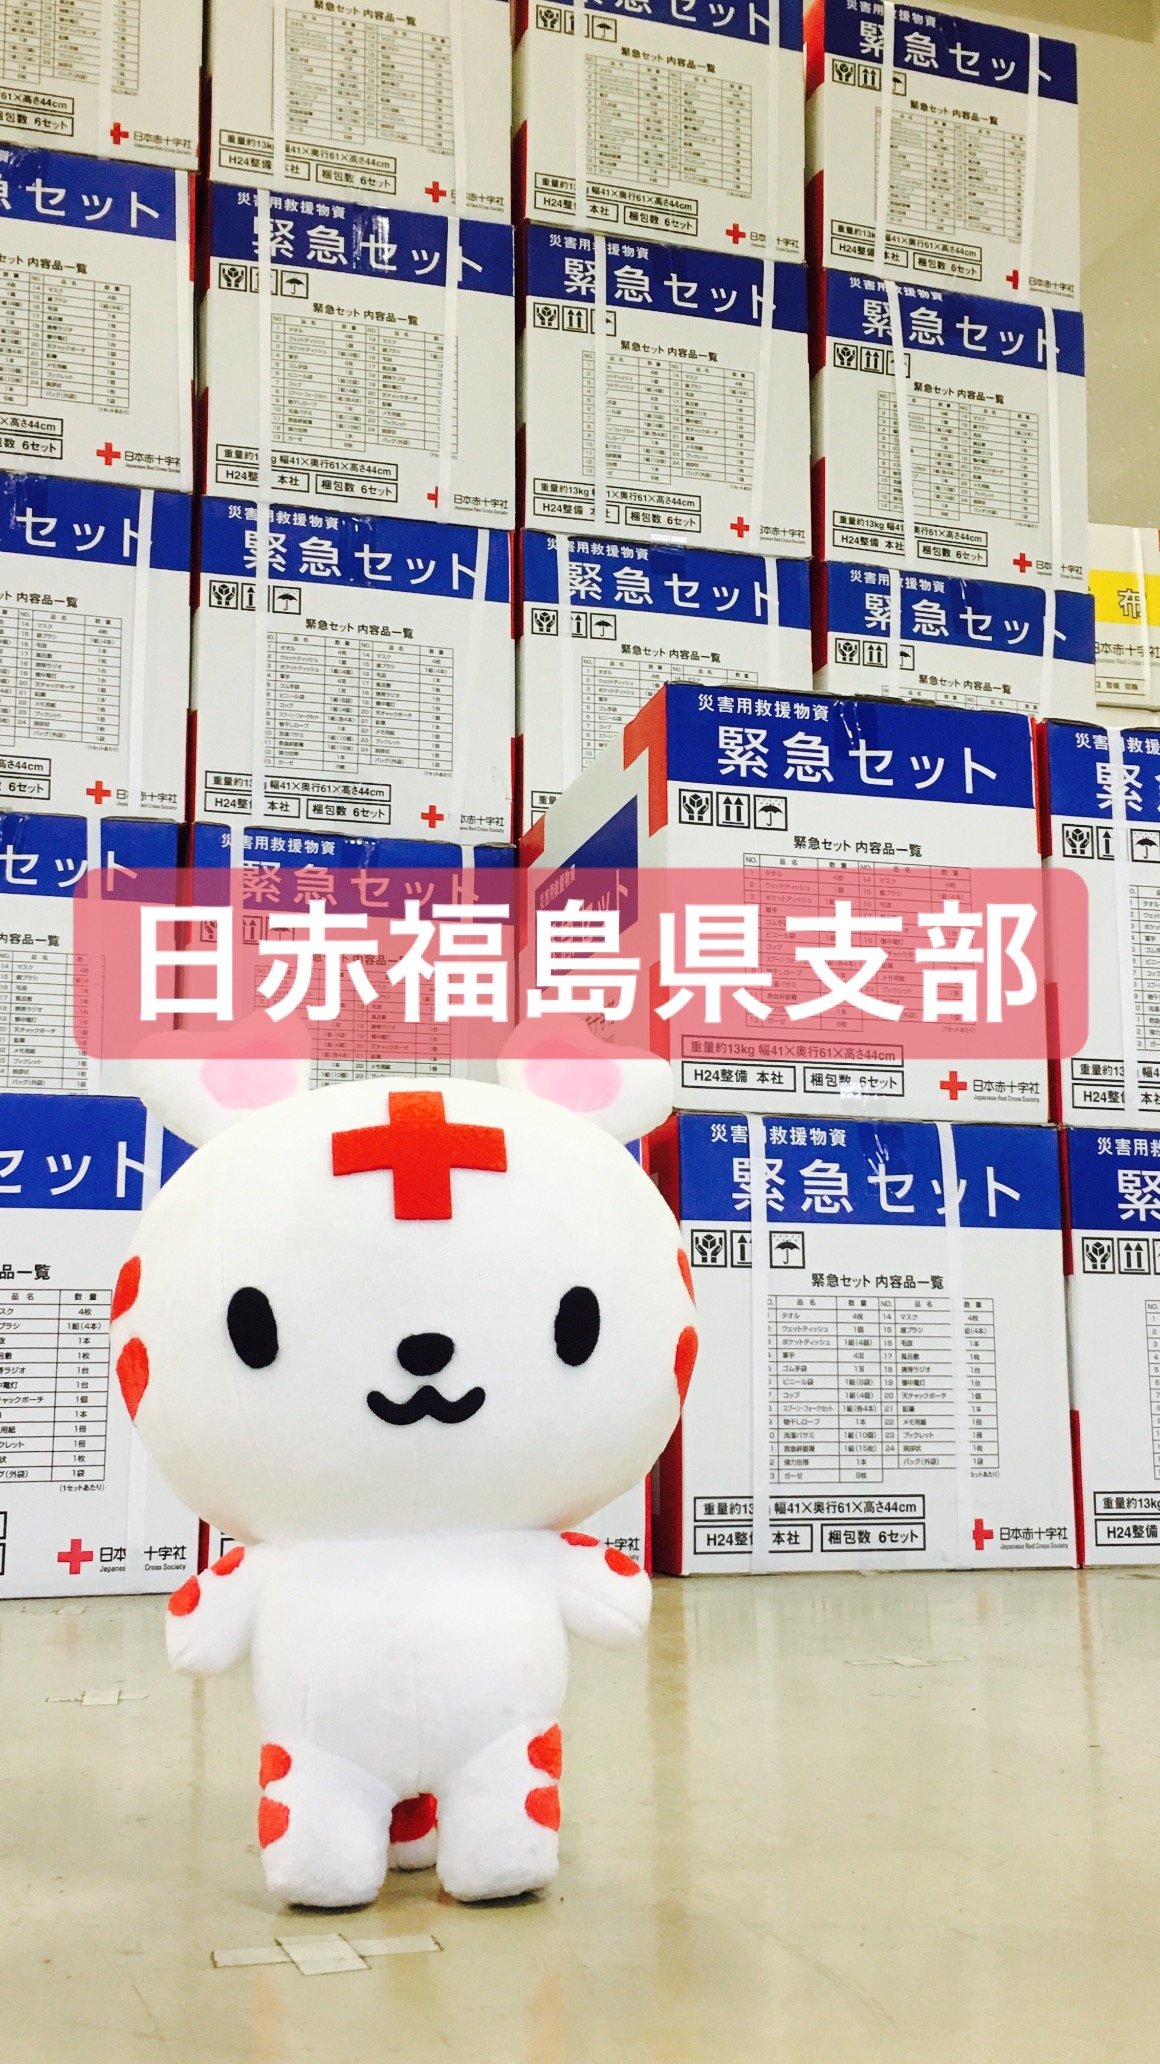 日本赤十字社福島県支部の公式アカウントです！インスタグラムを活用し福島県内の赤十字の動きを日々発信していきますのでご注目ください。https://t.co/xZgwUT5K8Z